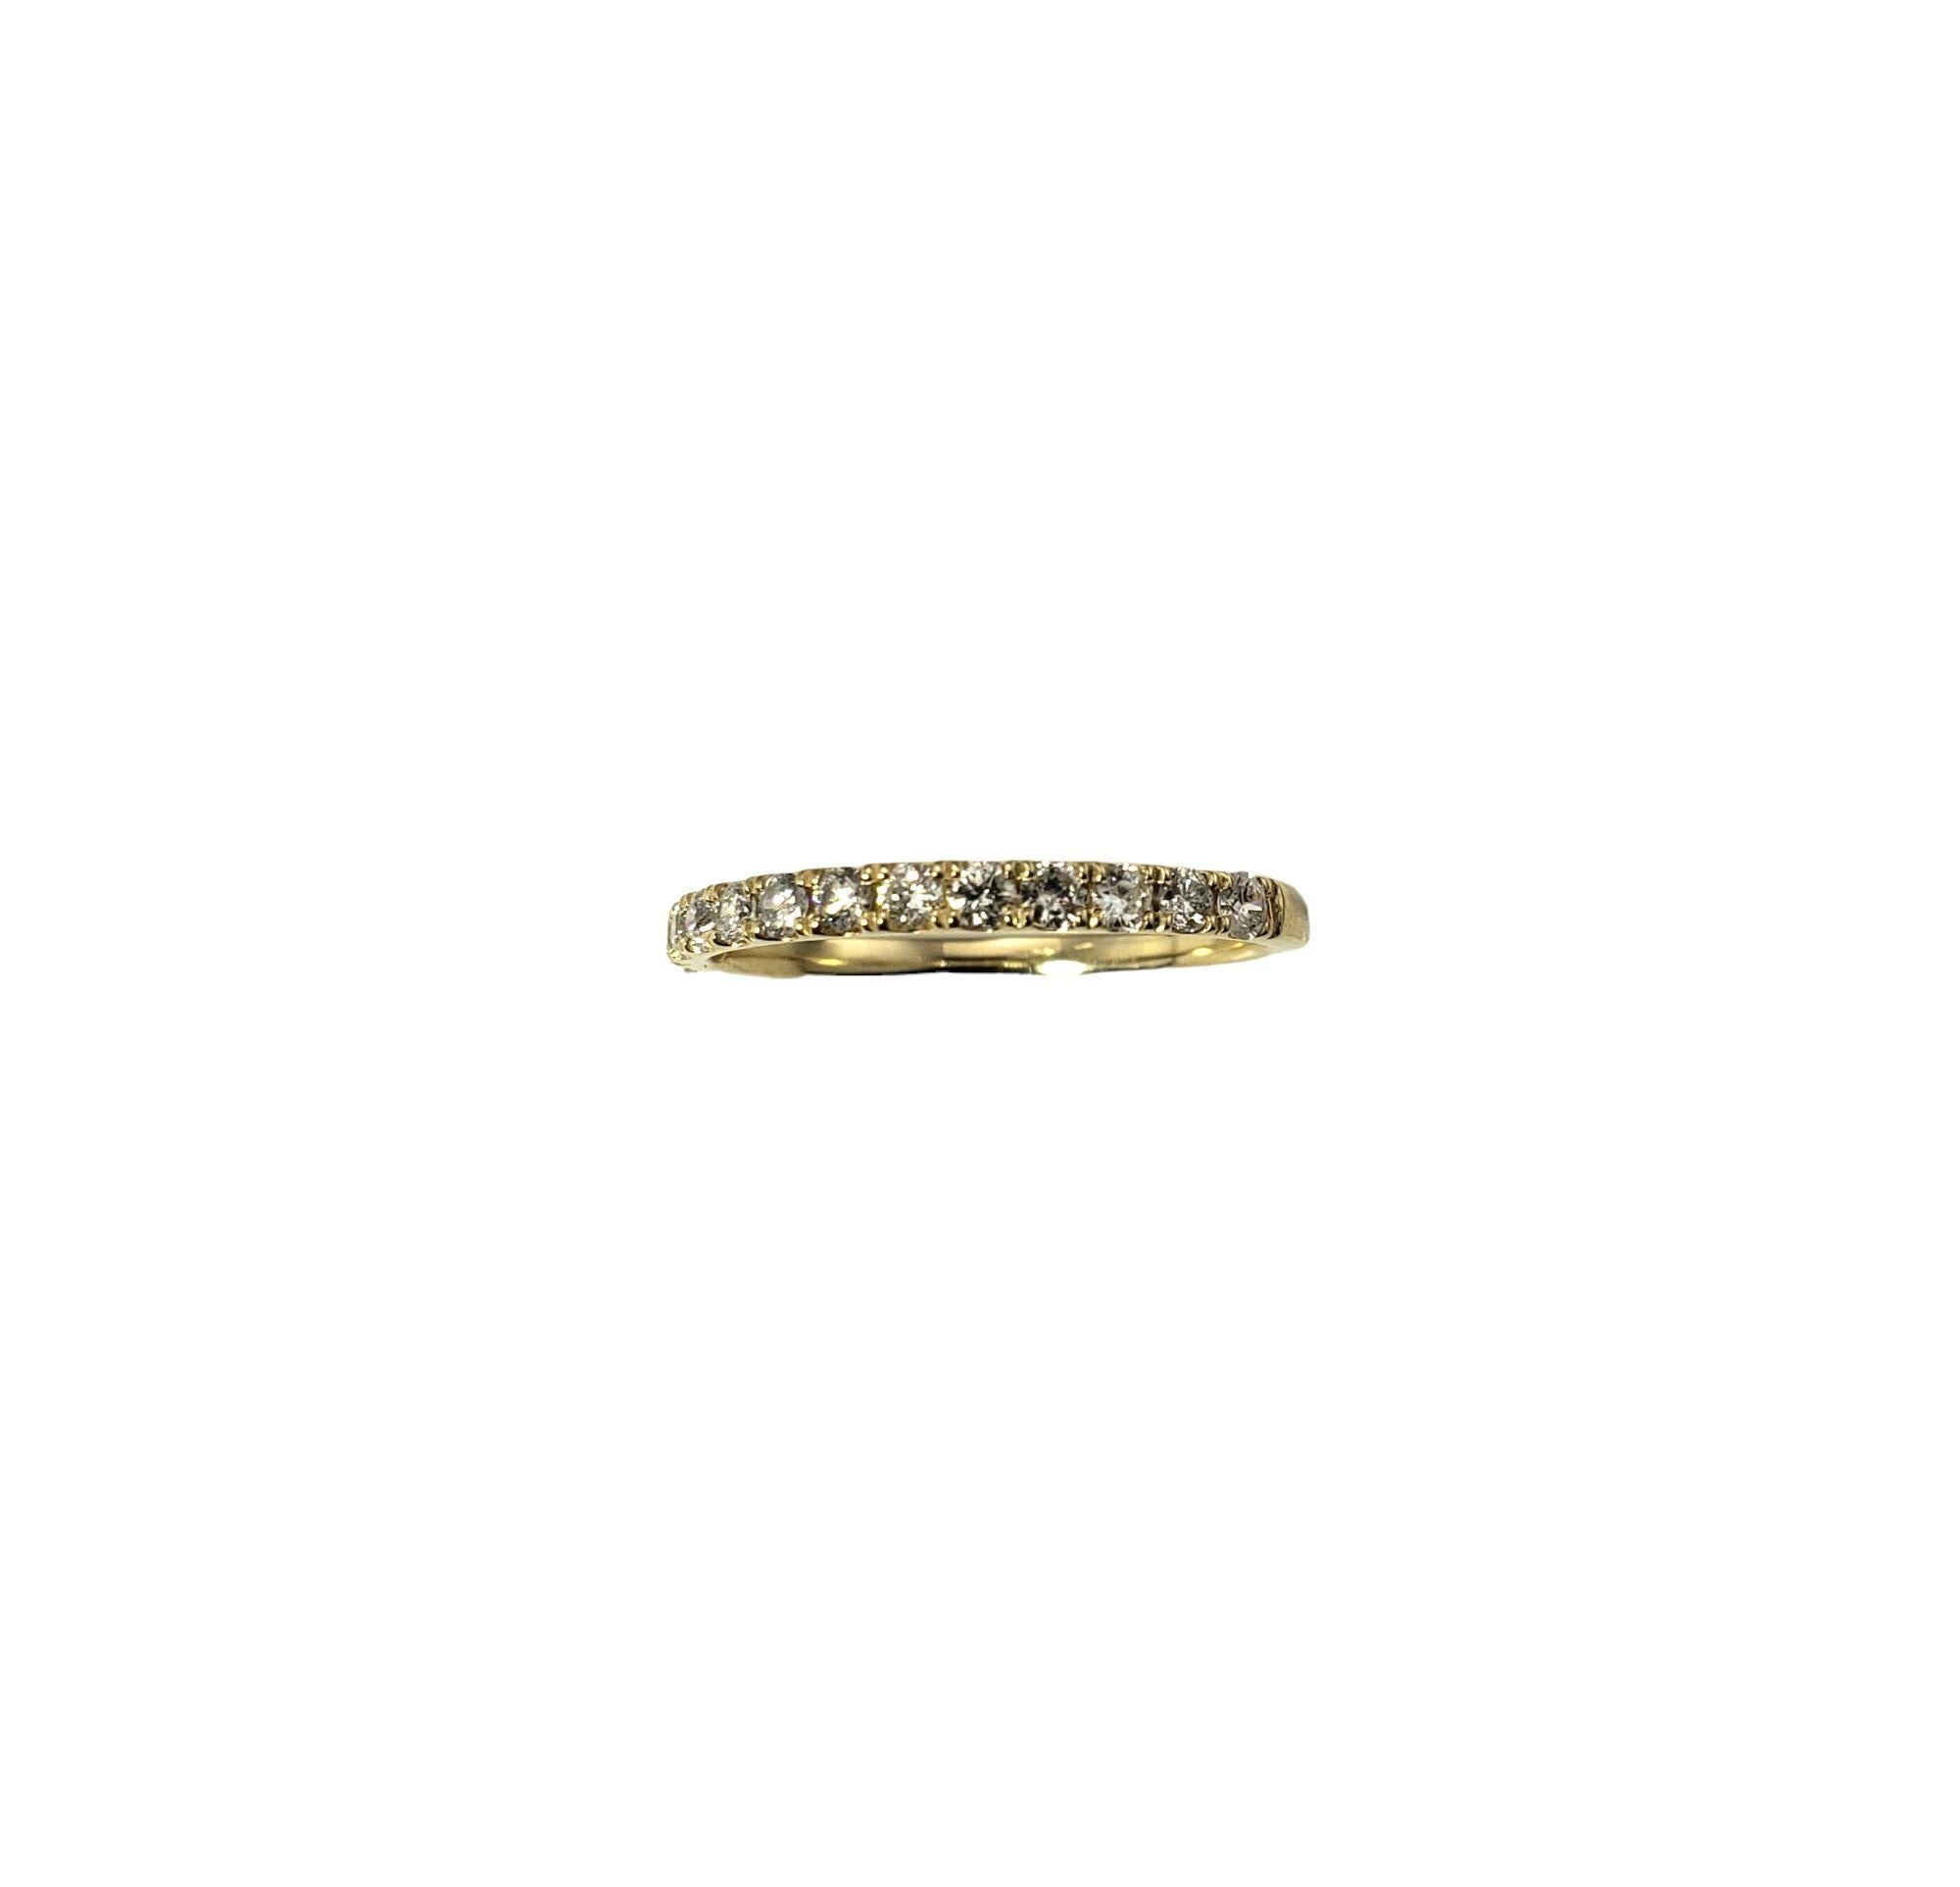 Vintage 14 Karat Yellow Gold Diamond Band Ring Size 6.75-

Ce bracelet étincelant présente 13 diamants ronds de taille brillante sertis dans de l'or jaune 14K classique. Largeur : 2 mm.

Poids total approximatif des diamants : 39 ct.

Clarté du